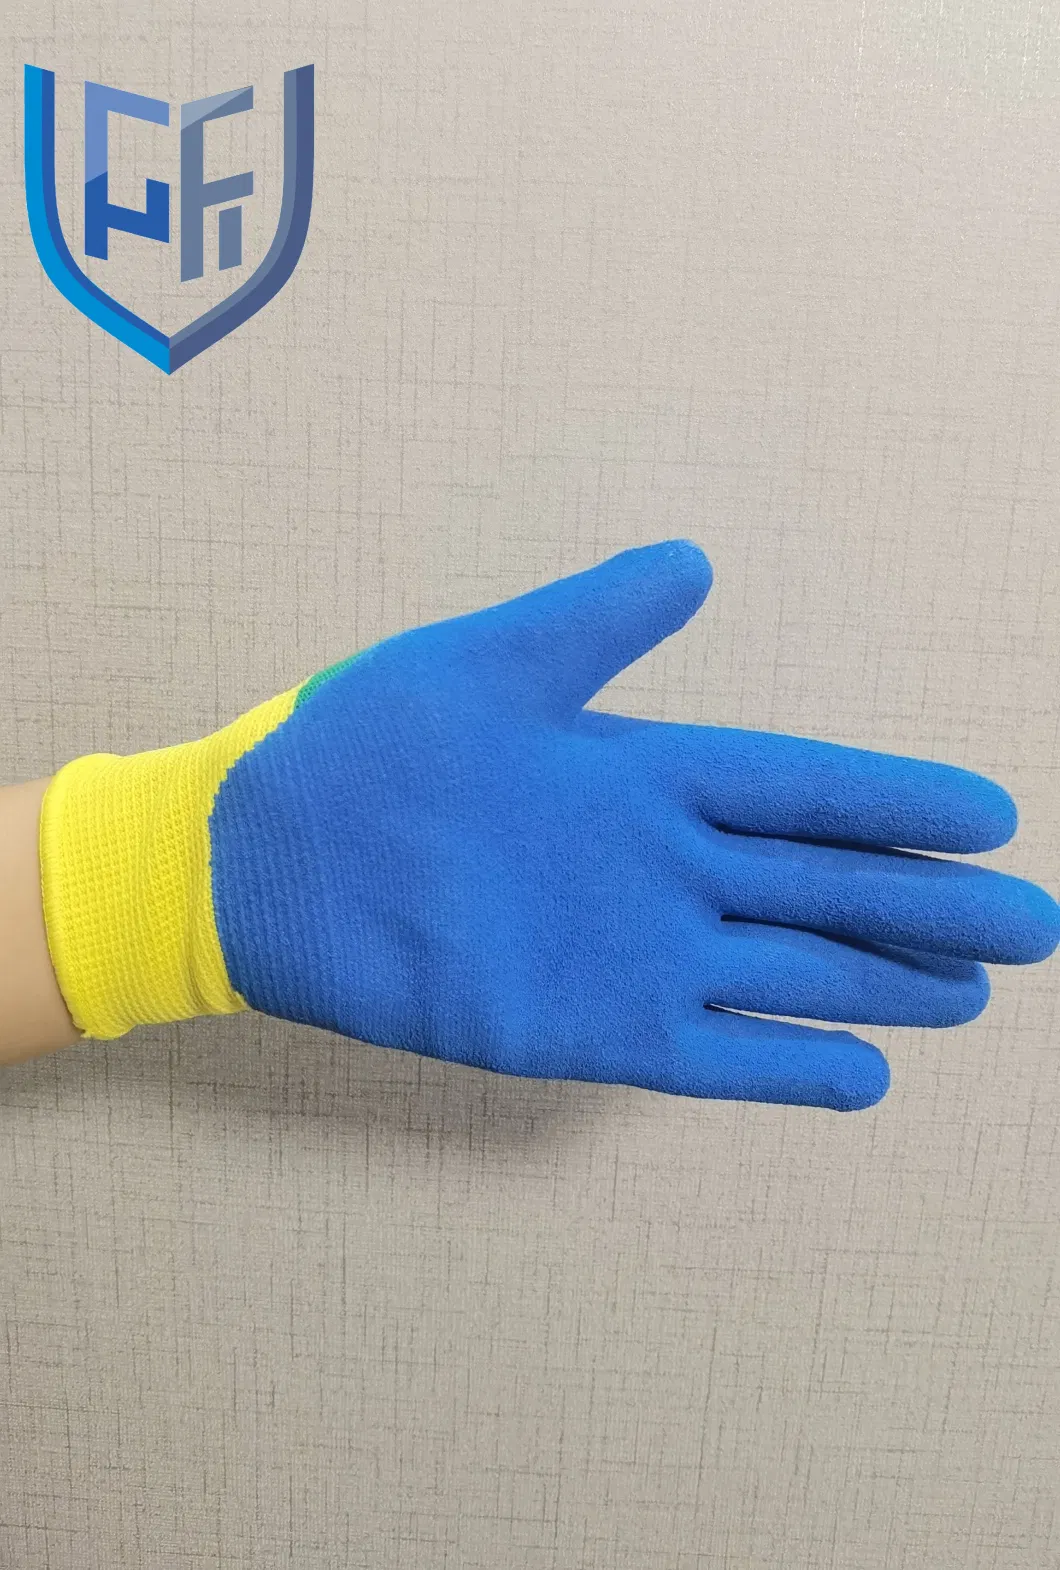 High Quality Nitrile Sandy Children Garden Glove with 13G Nylon Liner